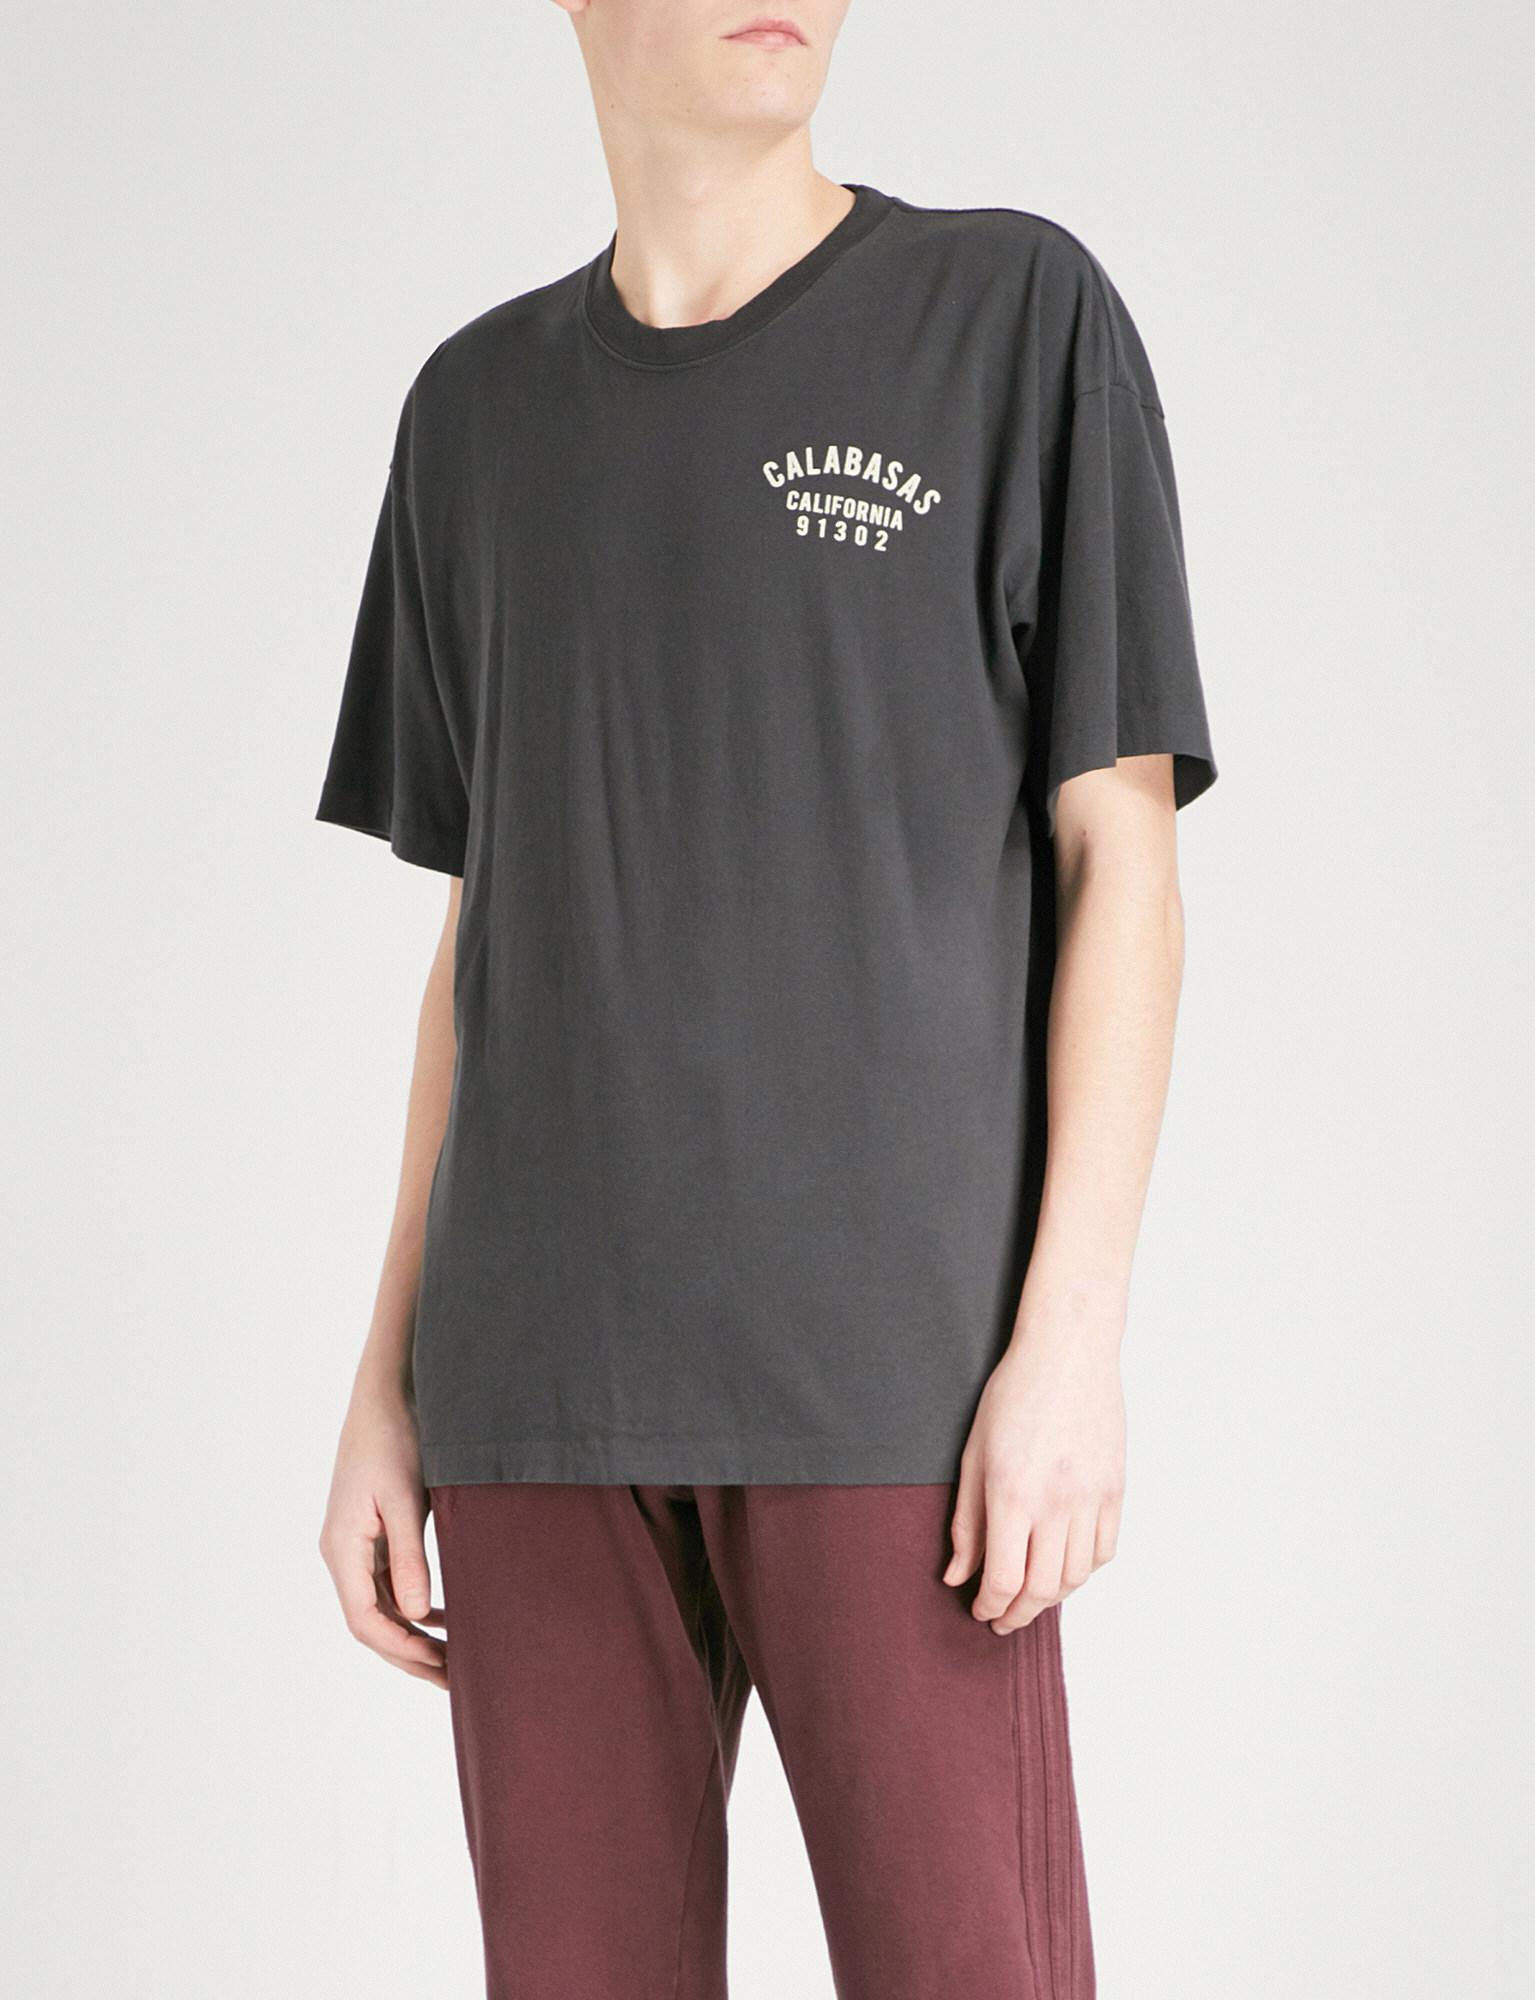 enkelt gang frynser spektrum Yeezy Season 5 Calabasas Cotton-jersey T-shirt for Men | Lyst